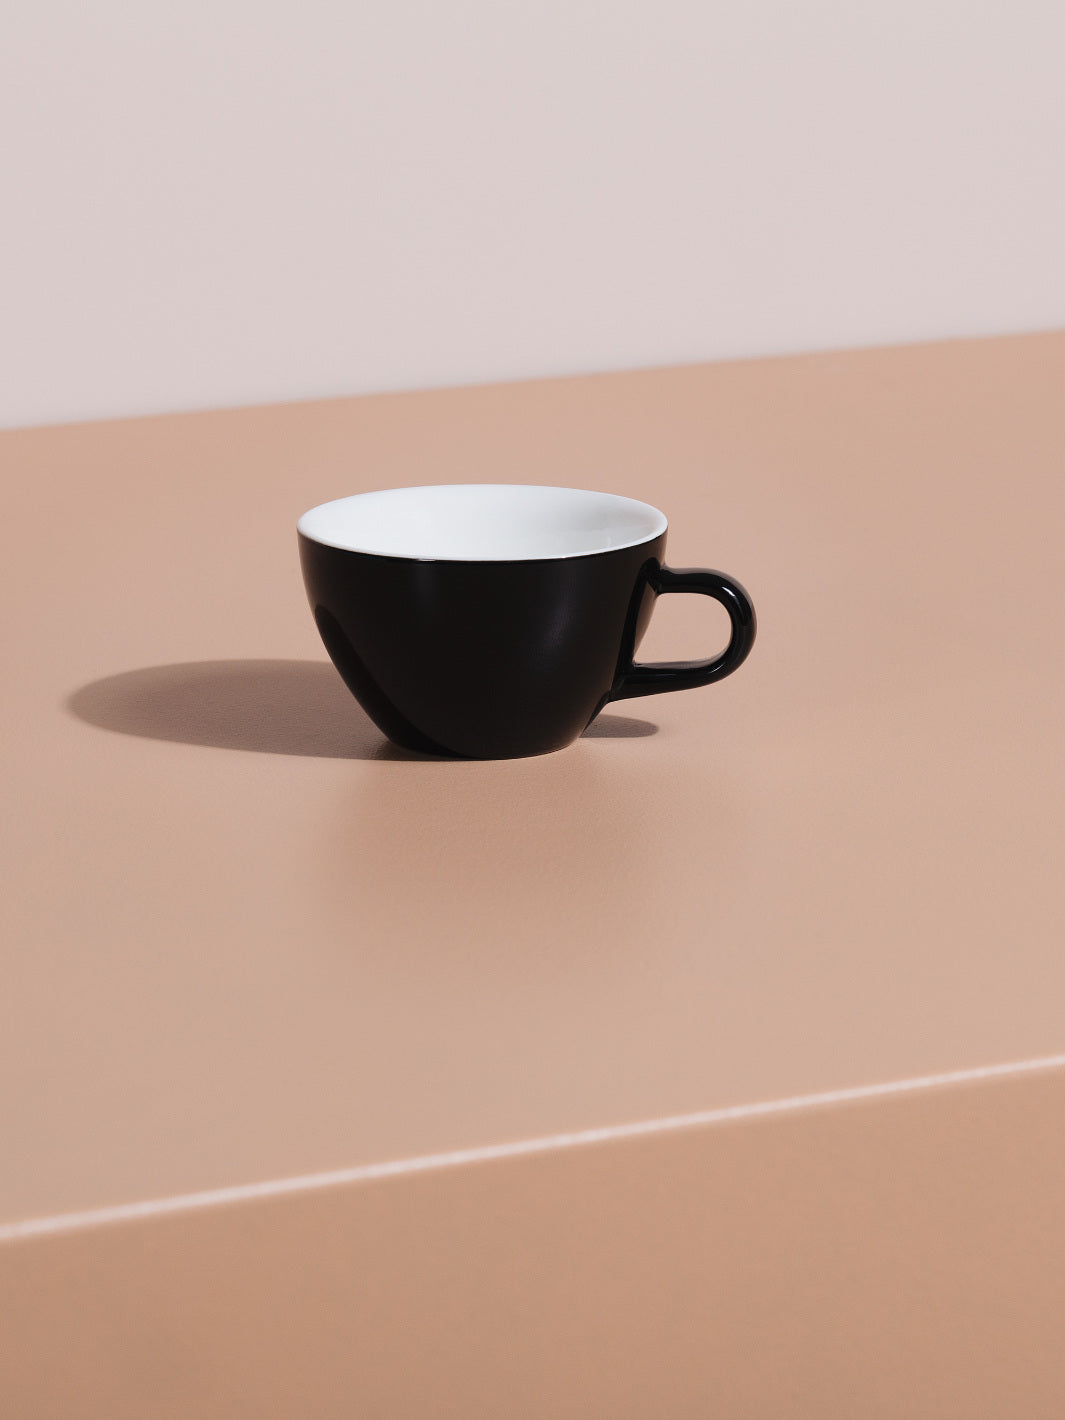 Espresso Cups/Mugs for Sale, cappuccino cups